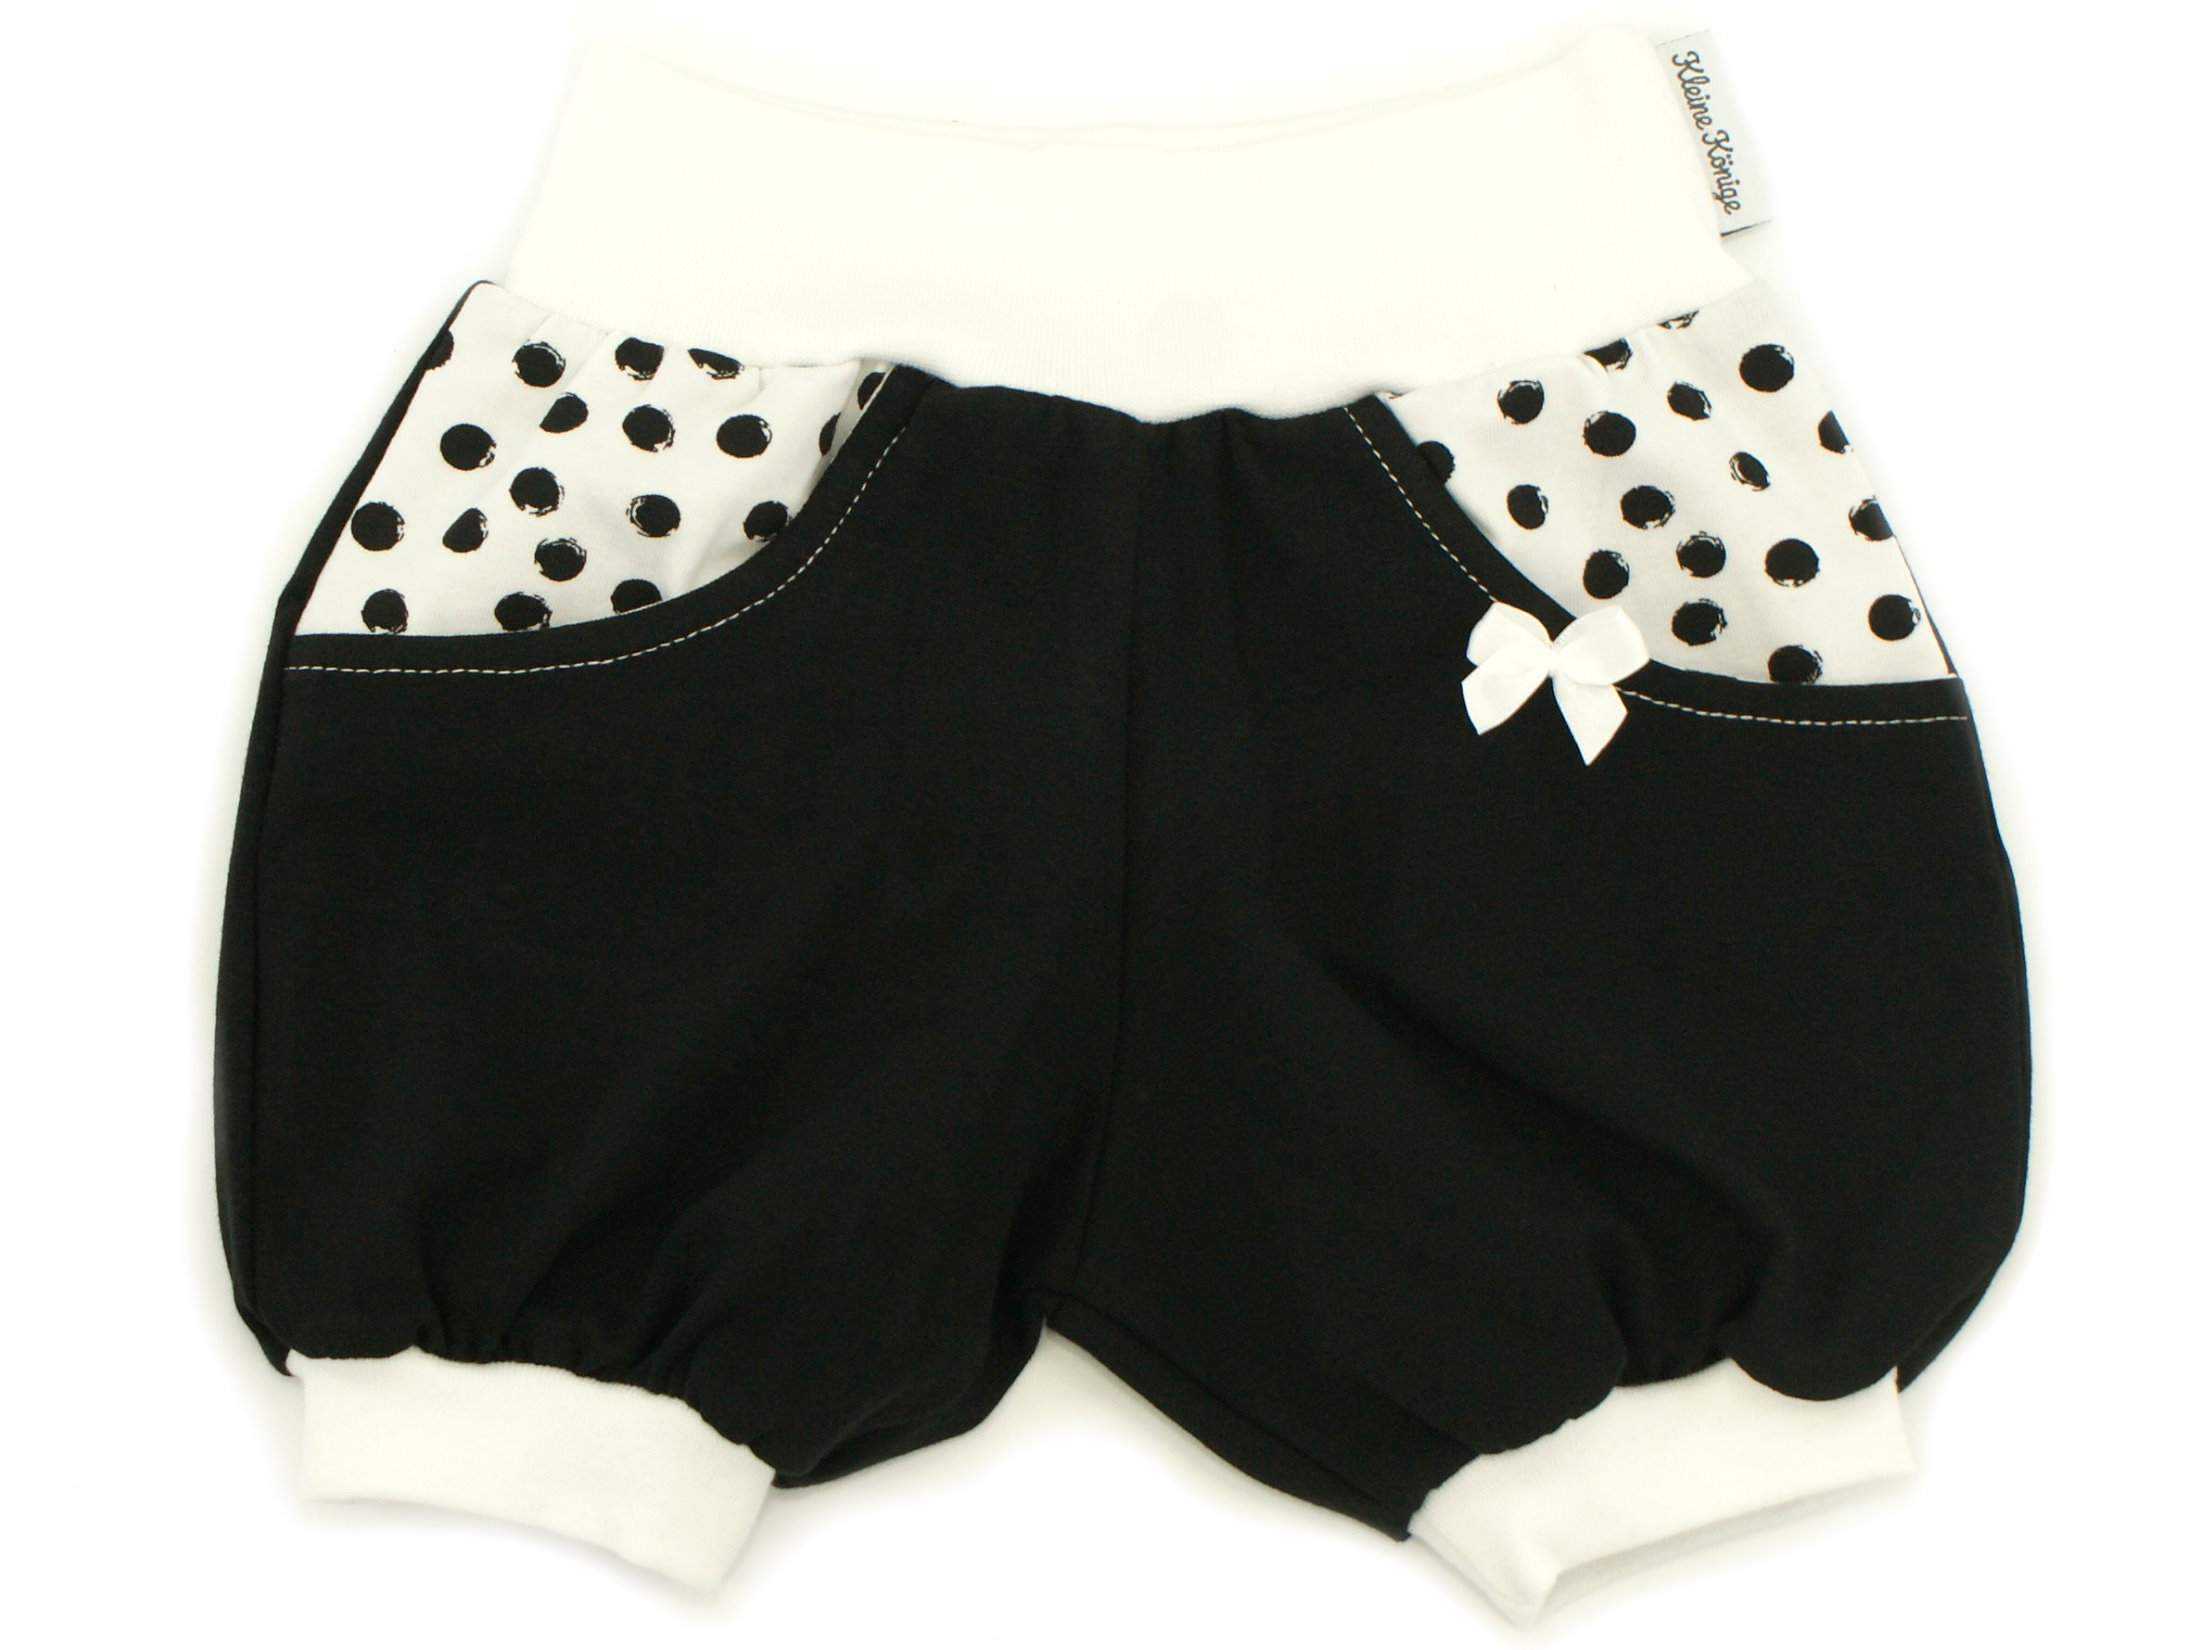 Kinder Sommer Shorts mit Taschen "Black and White" schwarz